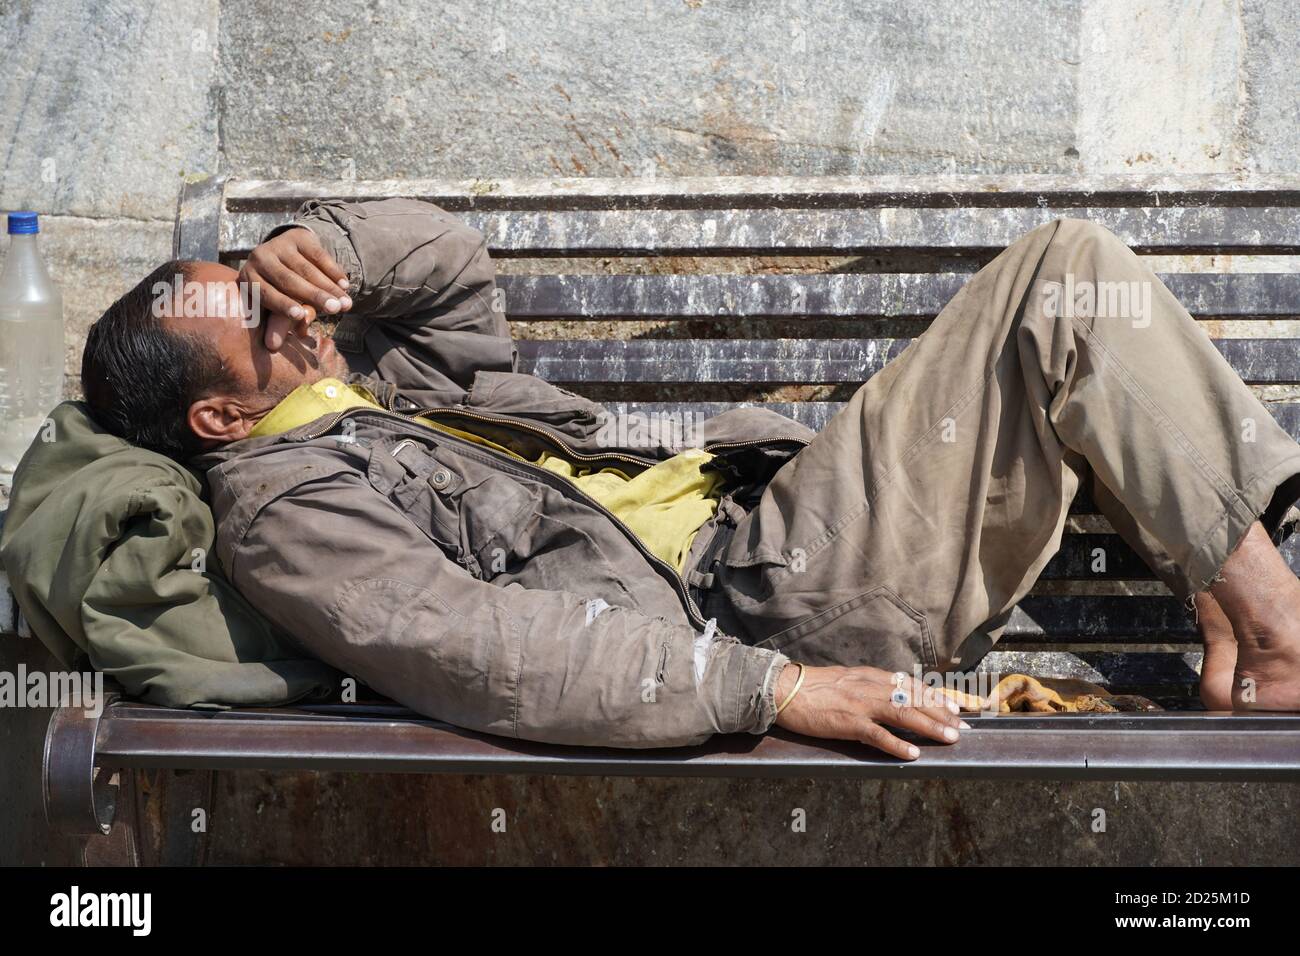 Armer obdachloser Bettler oder Flüchtling, der tagsüber auf einer schmutzigen Holzbank in einer Einbahnstraße in der Stadt schläft. Sozialdokumentarisches Konzept. Schuh Stockfoto